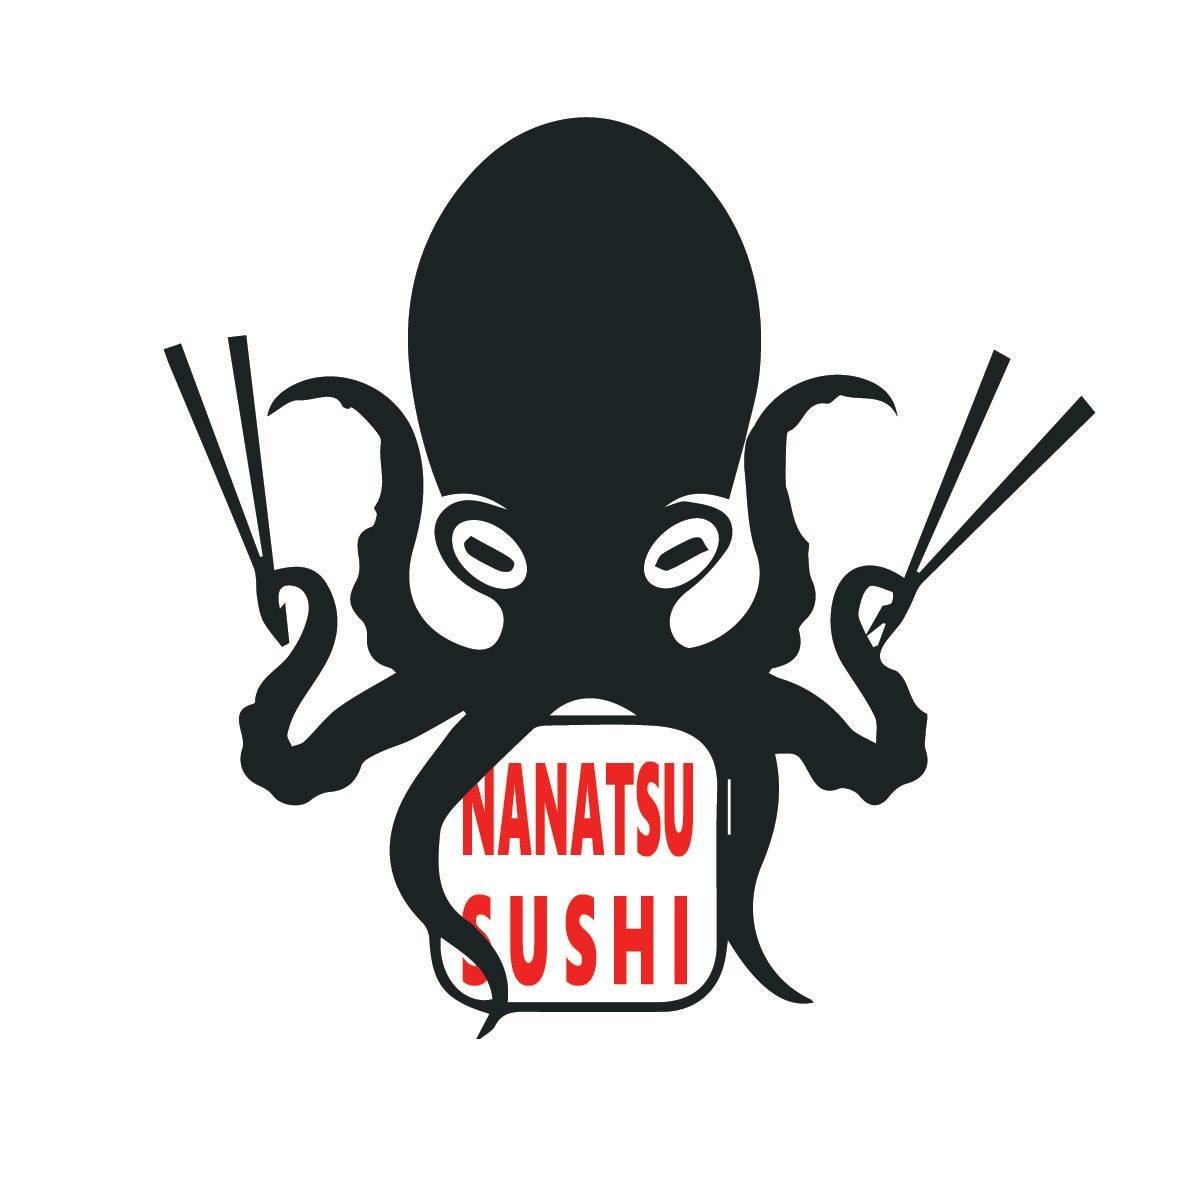 Nanatsu Sushi